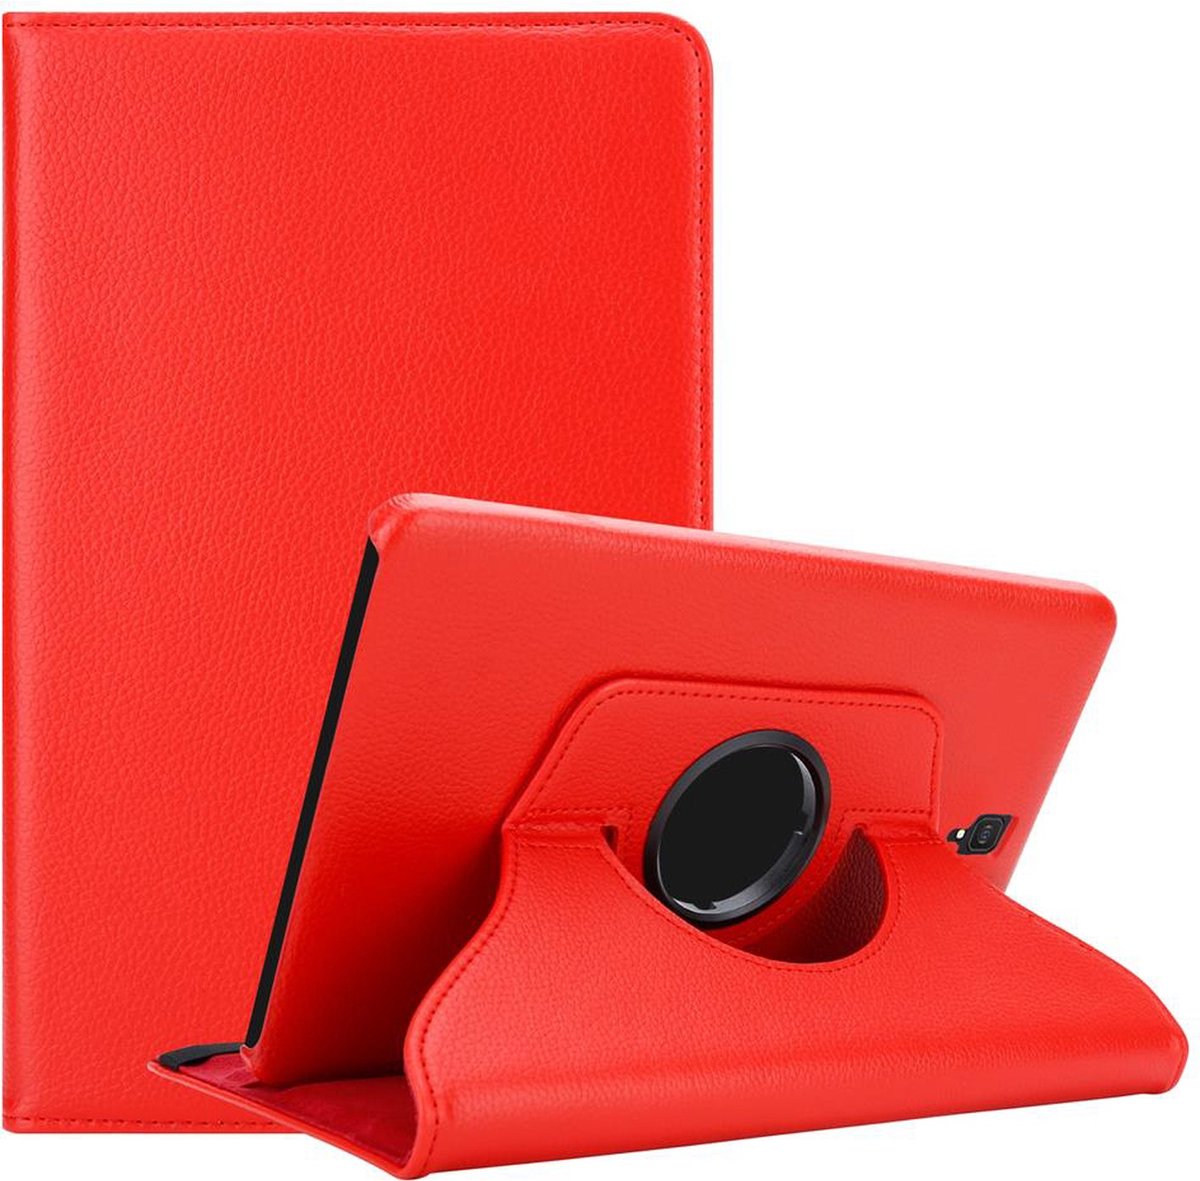 Cadorabo Tablet Hoesje voor Samsung Galaxy Tab S4 (10.5 inch) in KLAPROOS ROOD - Beschermhoes ZONDER auto Wake Up, met stand functie en elastische band sluiting Book Case Cover Etui